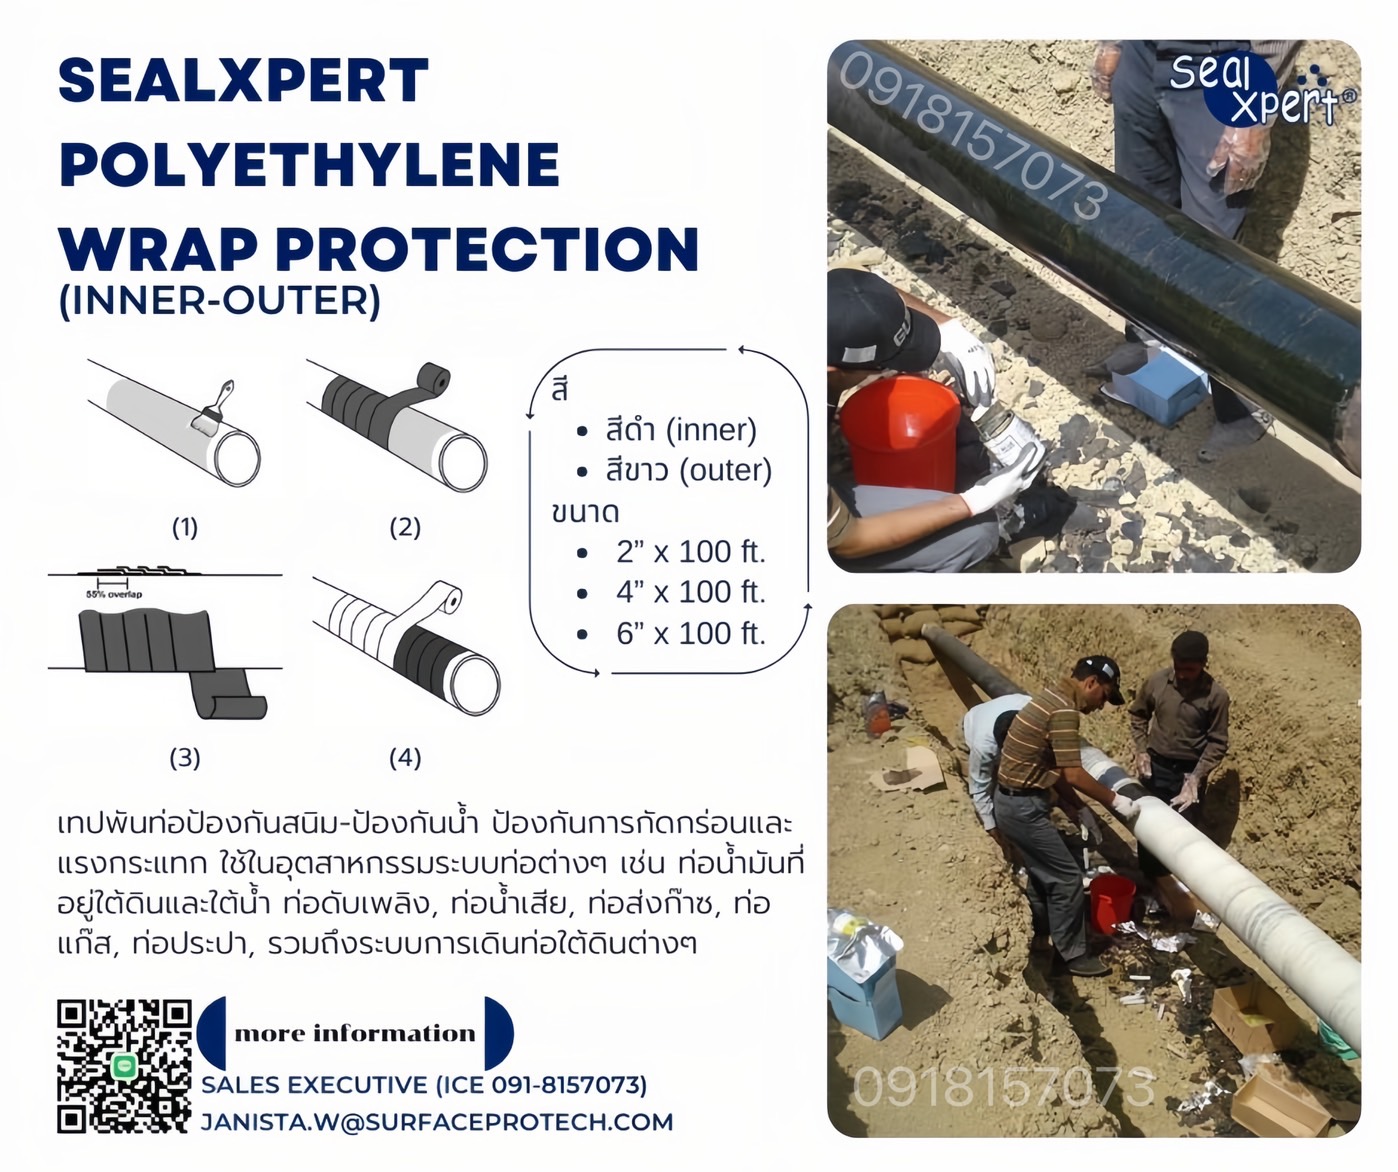 SealXpert Polyethylene Wrap Protection เทปพันท่อใต้ดิน นำเข้าจากสิงคโปร์ ป้องกันสนิมและการกัดกร่อน ท่อน้ำมัน ท่อดับเพลิง ท่อน้ำ ท่อส่งก๊าซ-ติดต่อฝ่ายขาย(ไอซ์)0918157073ค่ะ รูปที่ 1